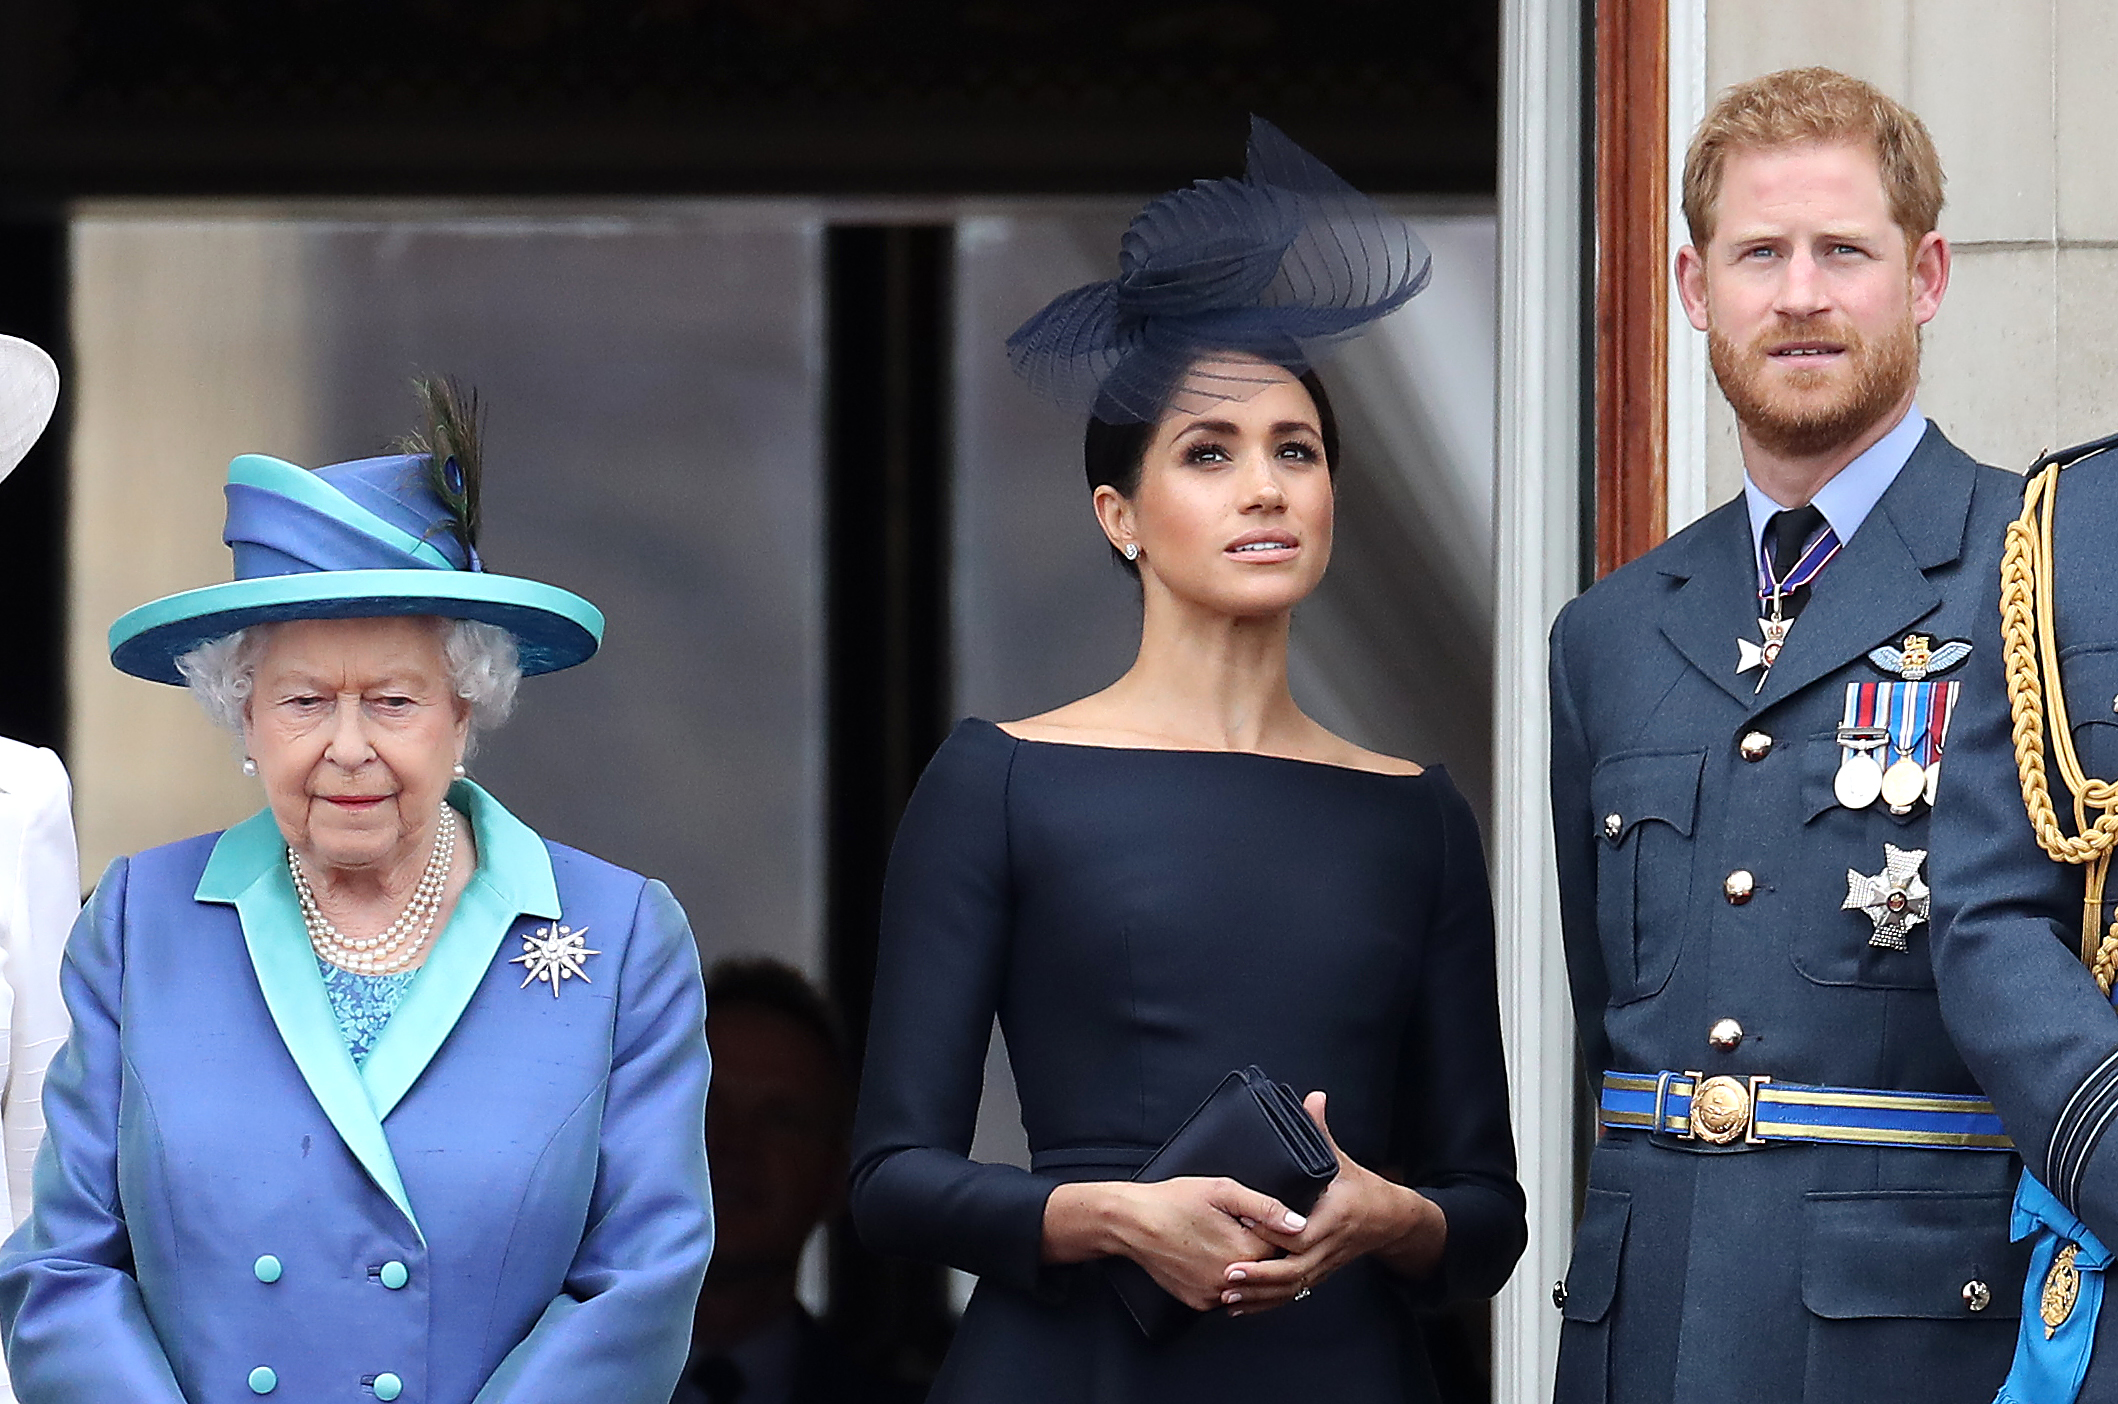 La reine Élisabeth II, Meghan Markle et le prince Harry au palais de Buckingham alors que la famille royale assiste aux événements marquant le centenaire de la RAF, le 10 juillet 2018 à Londres, en Angleterre | Source : Getty Images